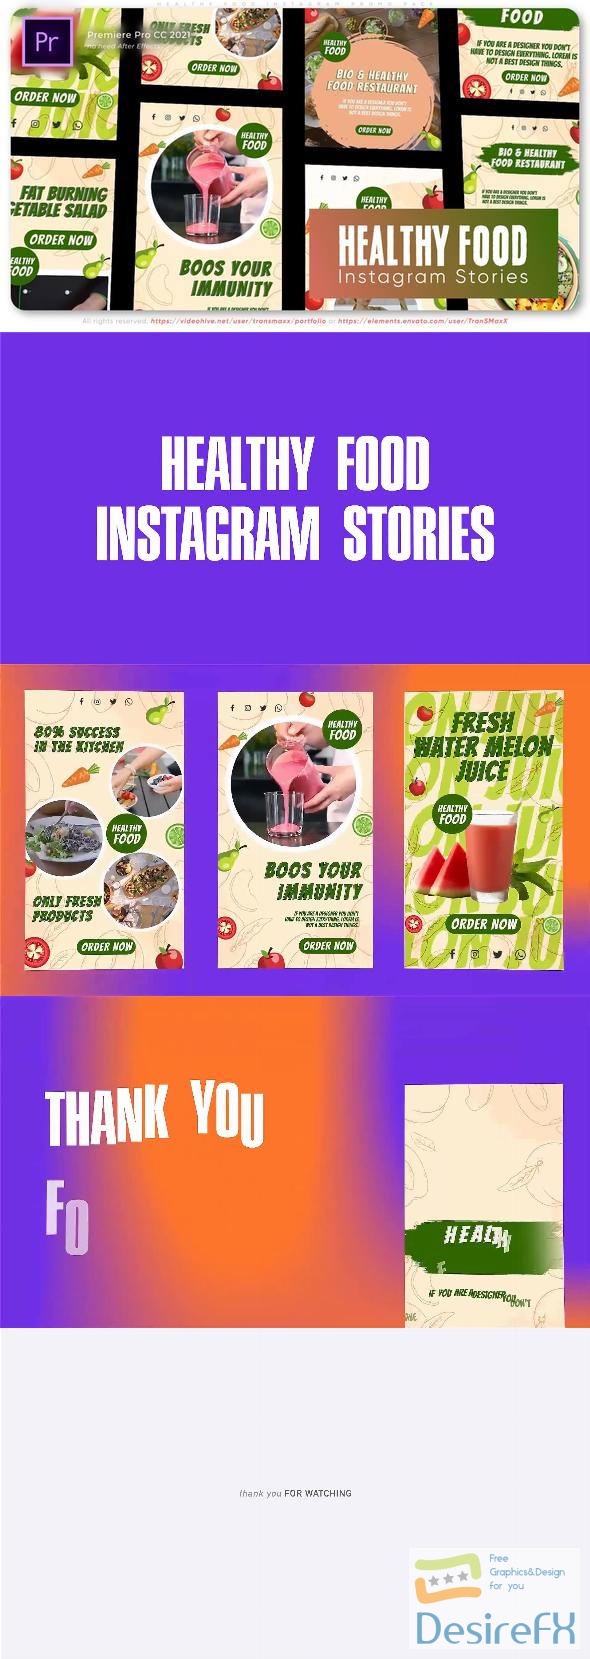 VideoHive Healthy Food Instagram Promo Pack 46160774